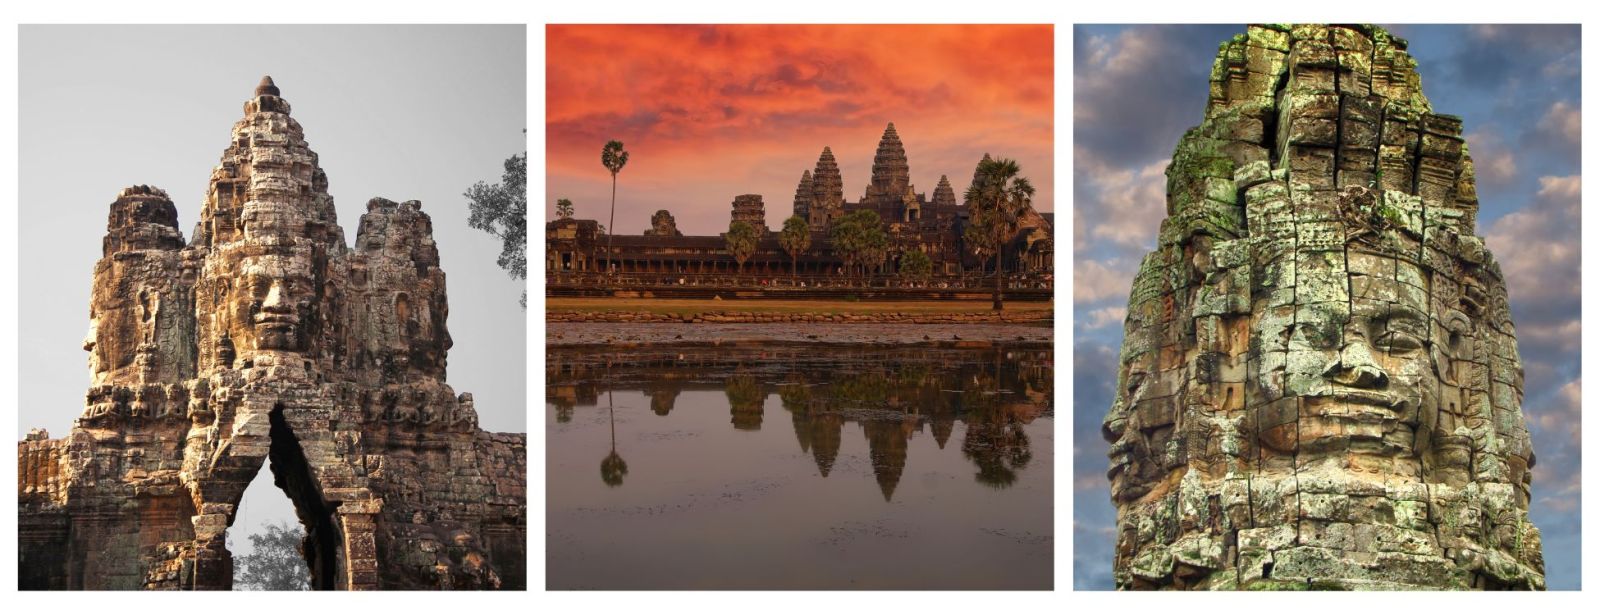 Holidays To Cambodia. Visit Angkor Wat